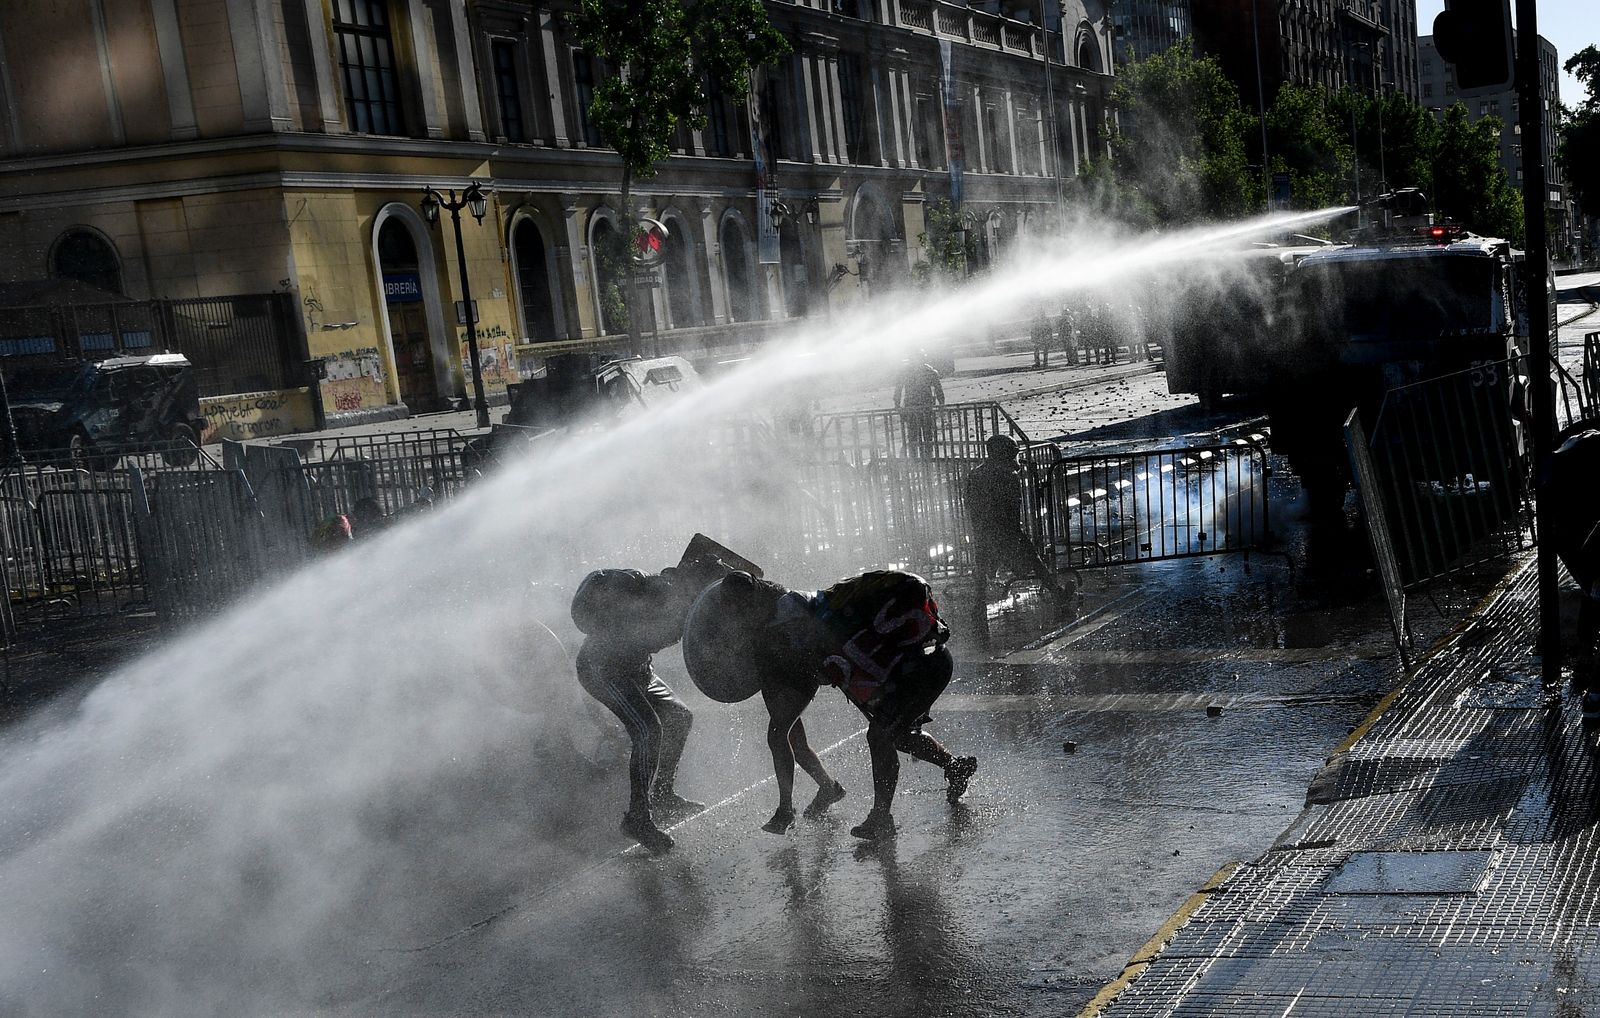 أثناء رش الشرطة التشيلية المياه على المتظاهرين خلال مواجهات بعد احتجاج على حكومة الرئيس التشيلي في سانتياغو - AFP